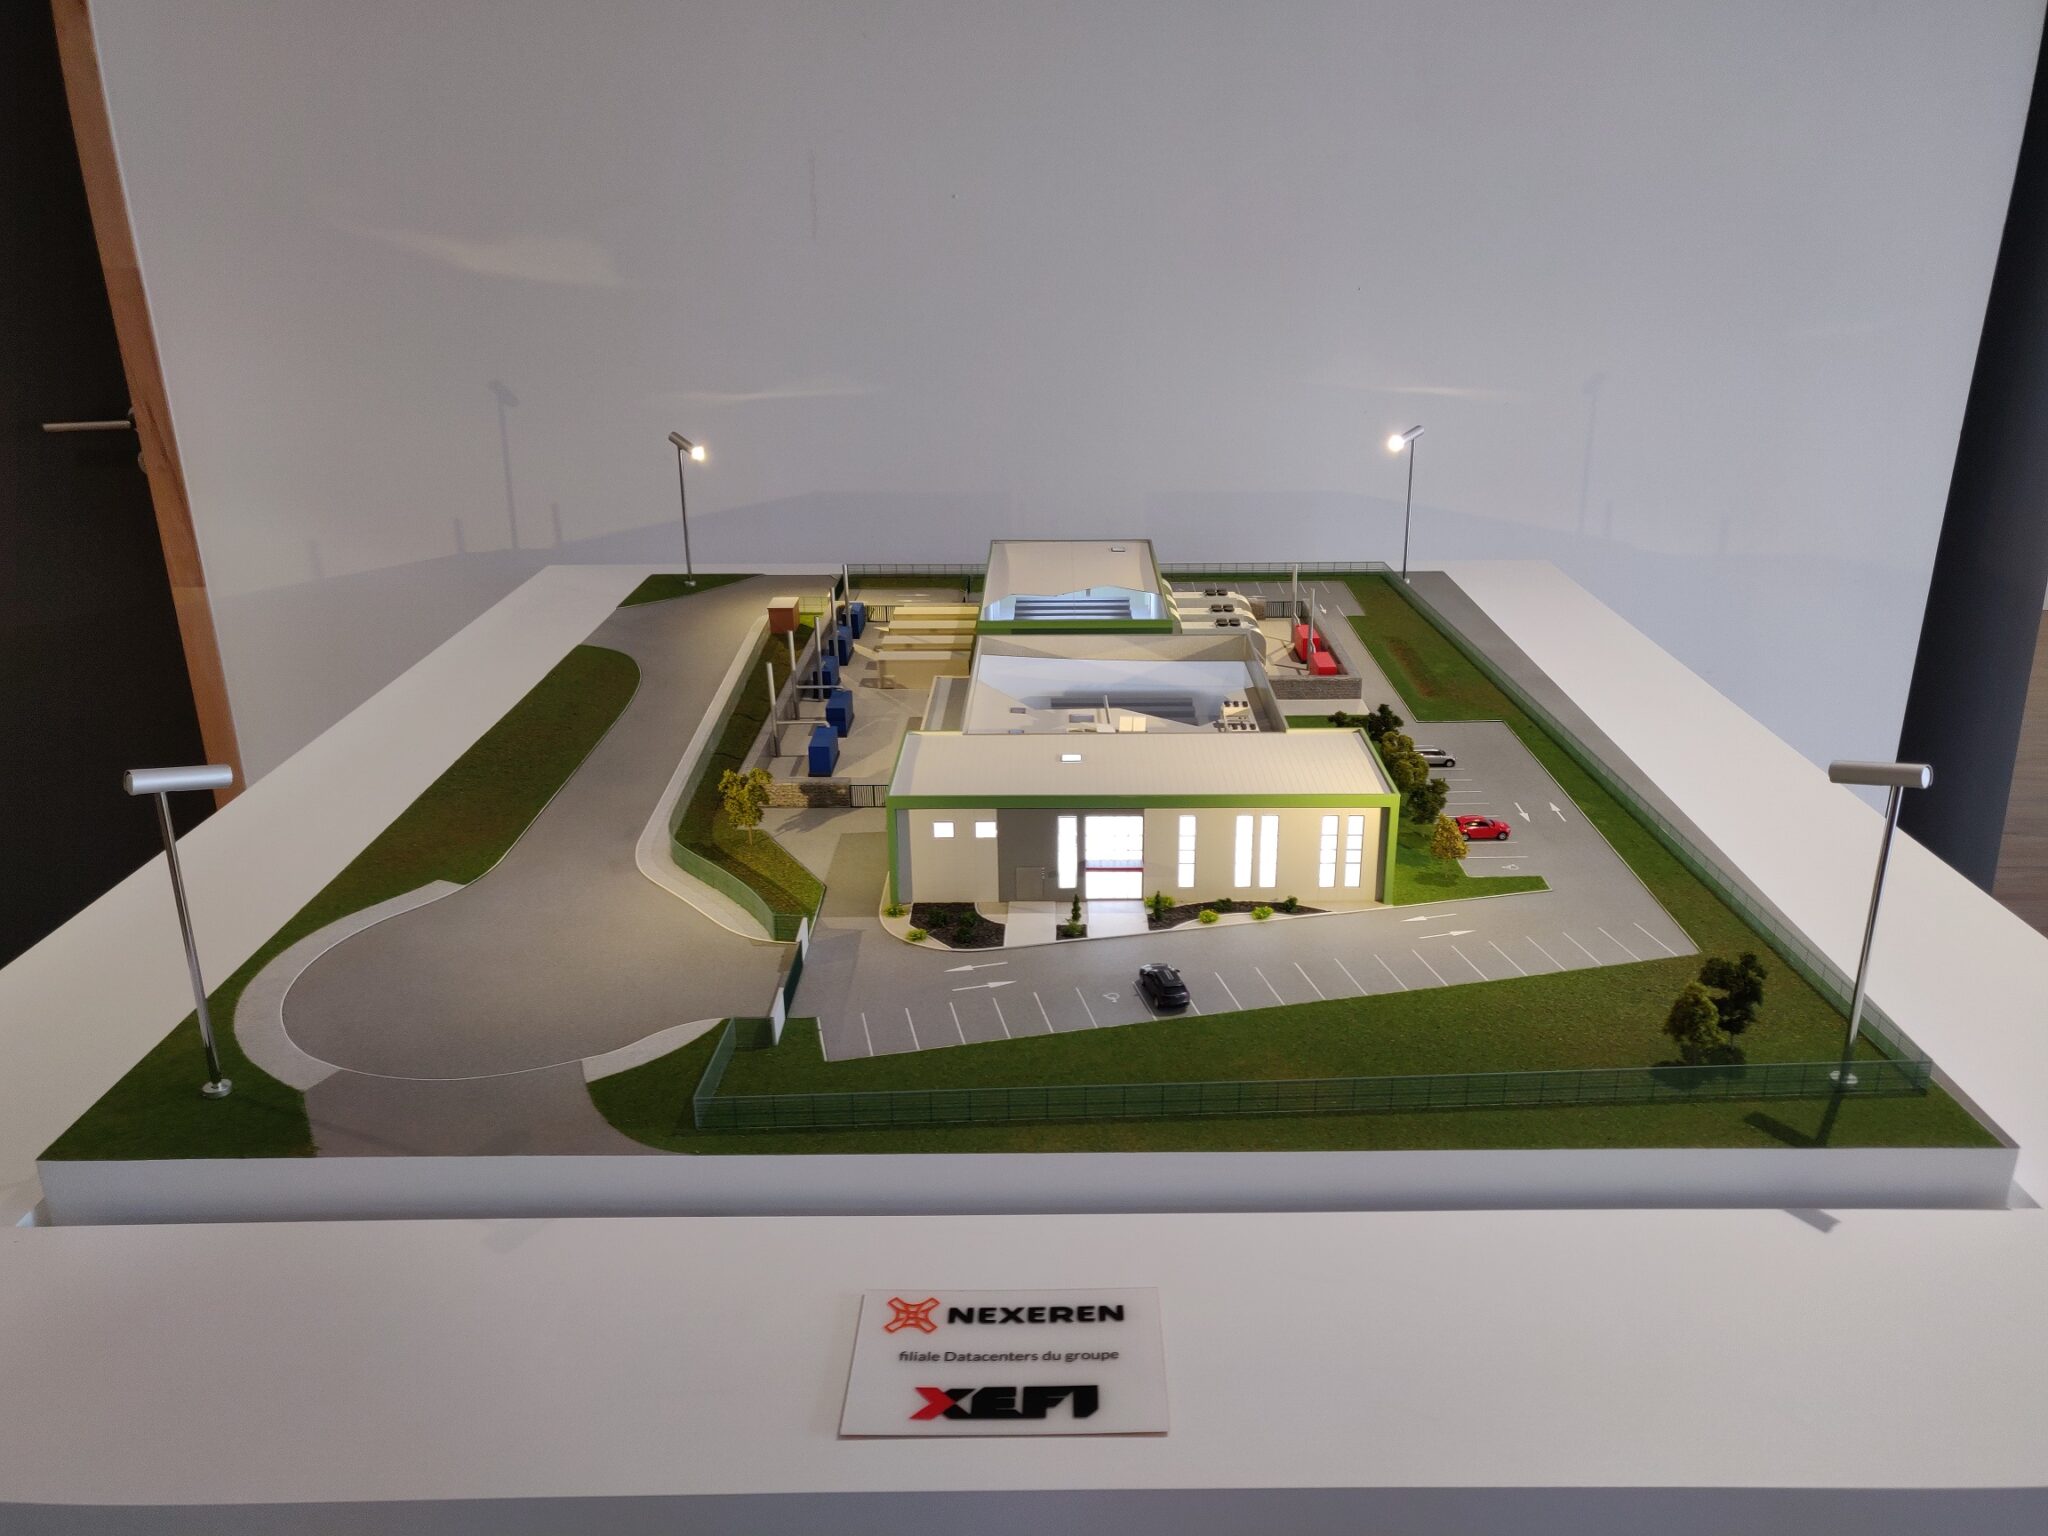 Maquette industrielle des datacenters Nexeren du Groupe Xefi - Vue en écorché du process